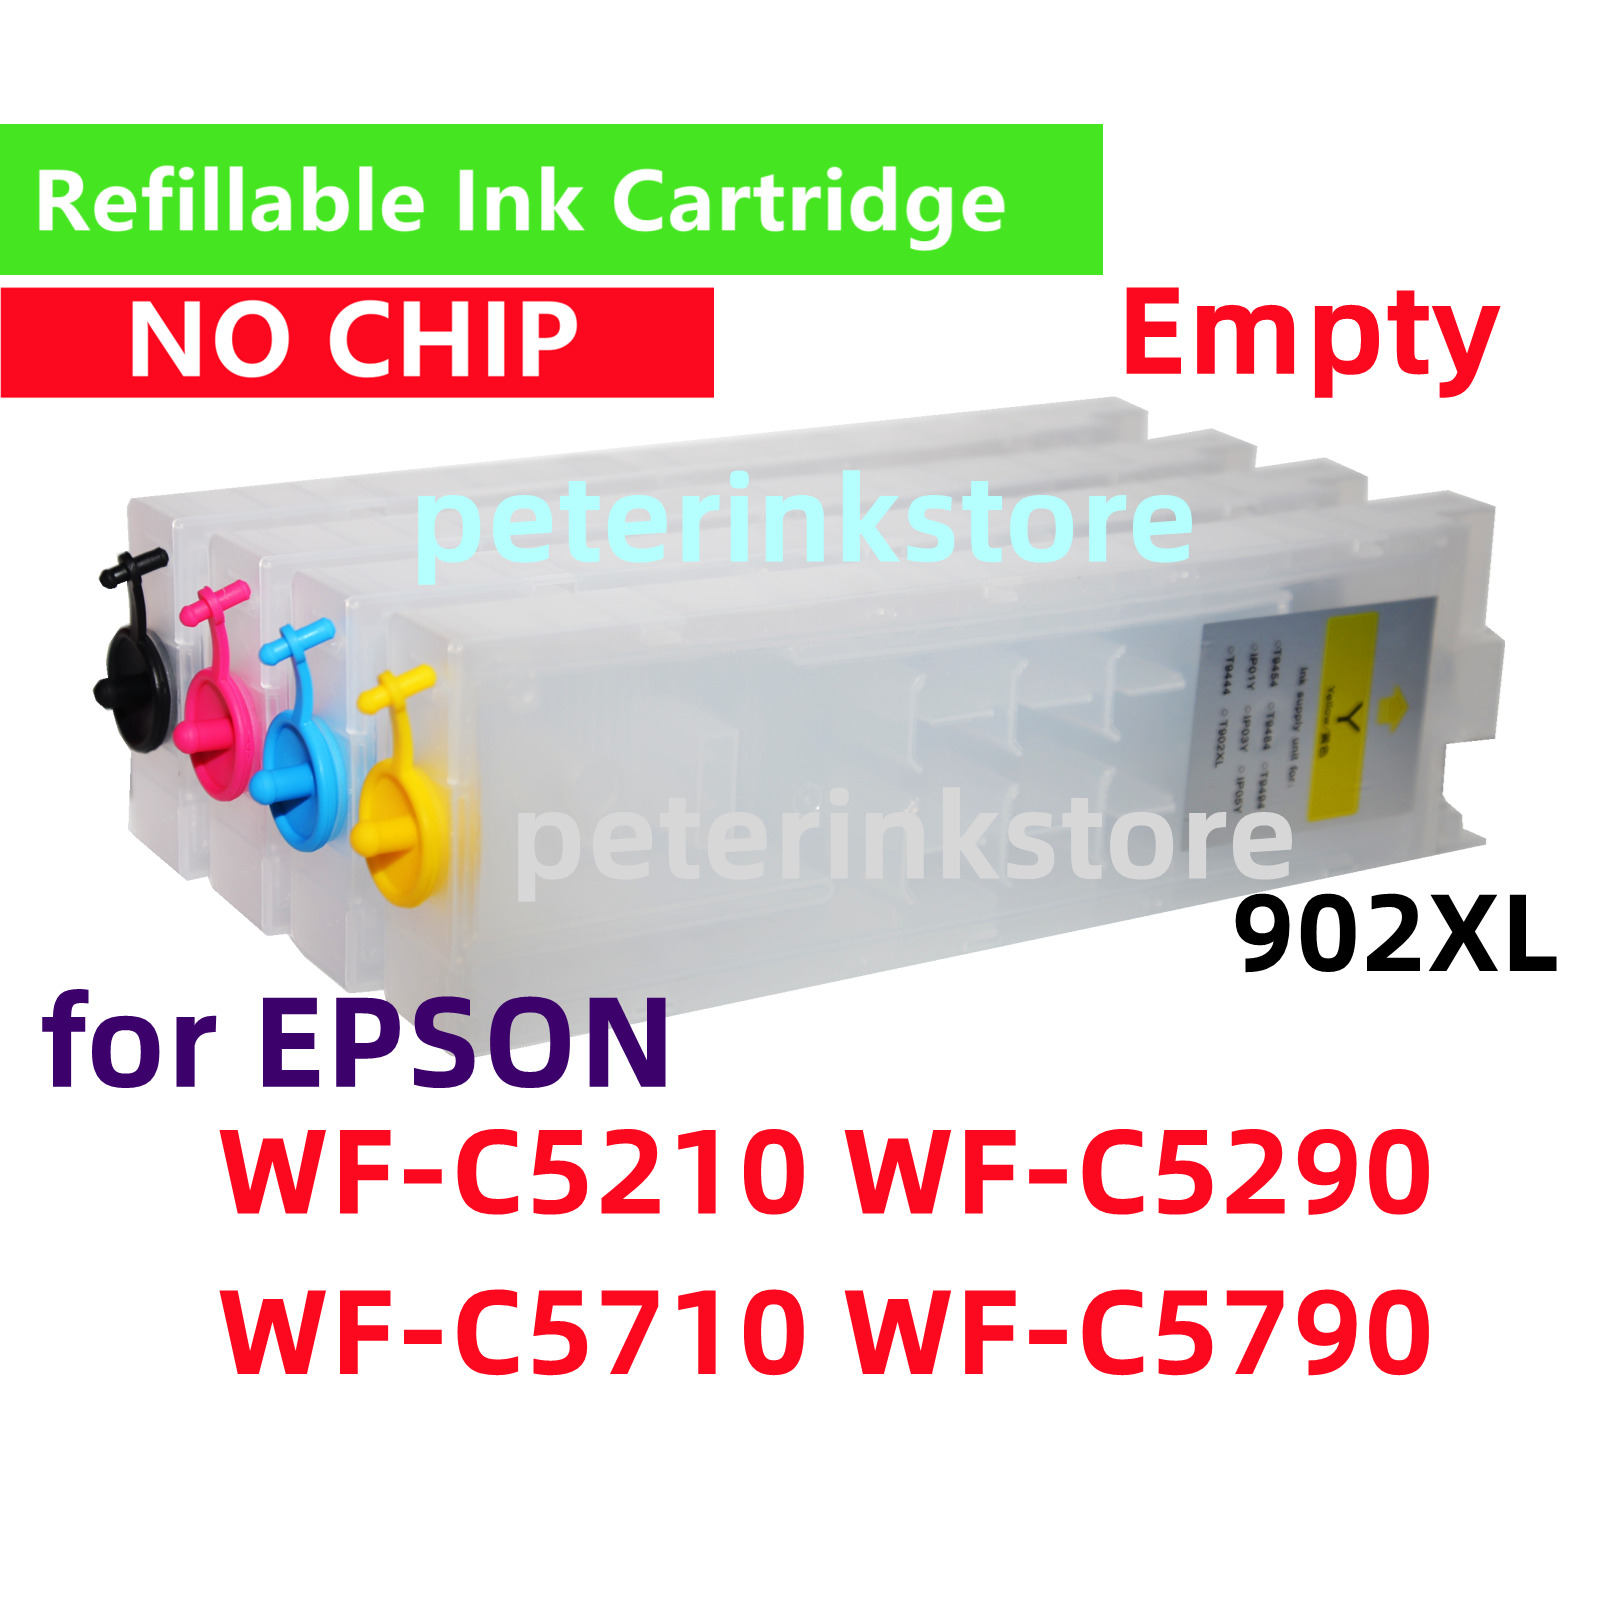 NOCHIP Refillable Ink Cartridge Pro WFC5210 WFC5290 WFC5710 WFC5790 902XL 902